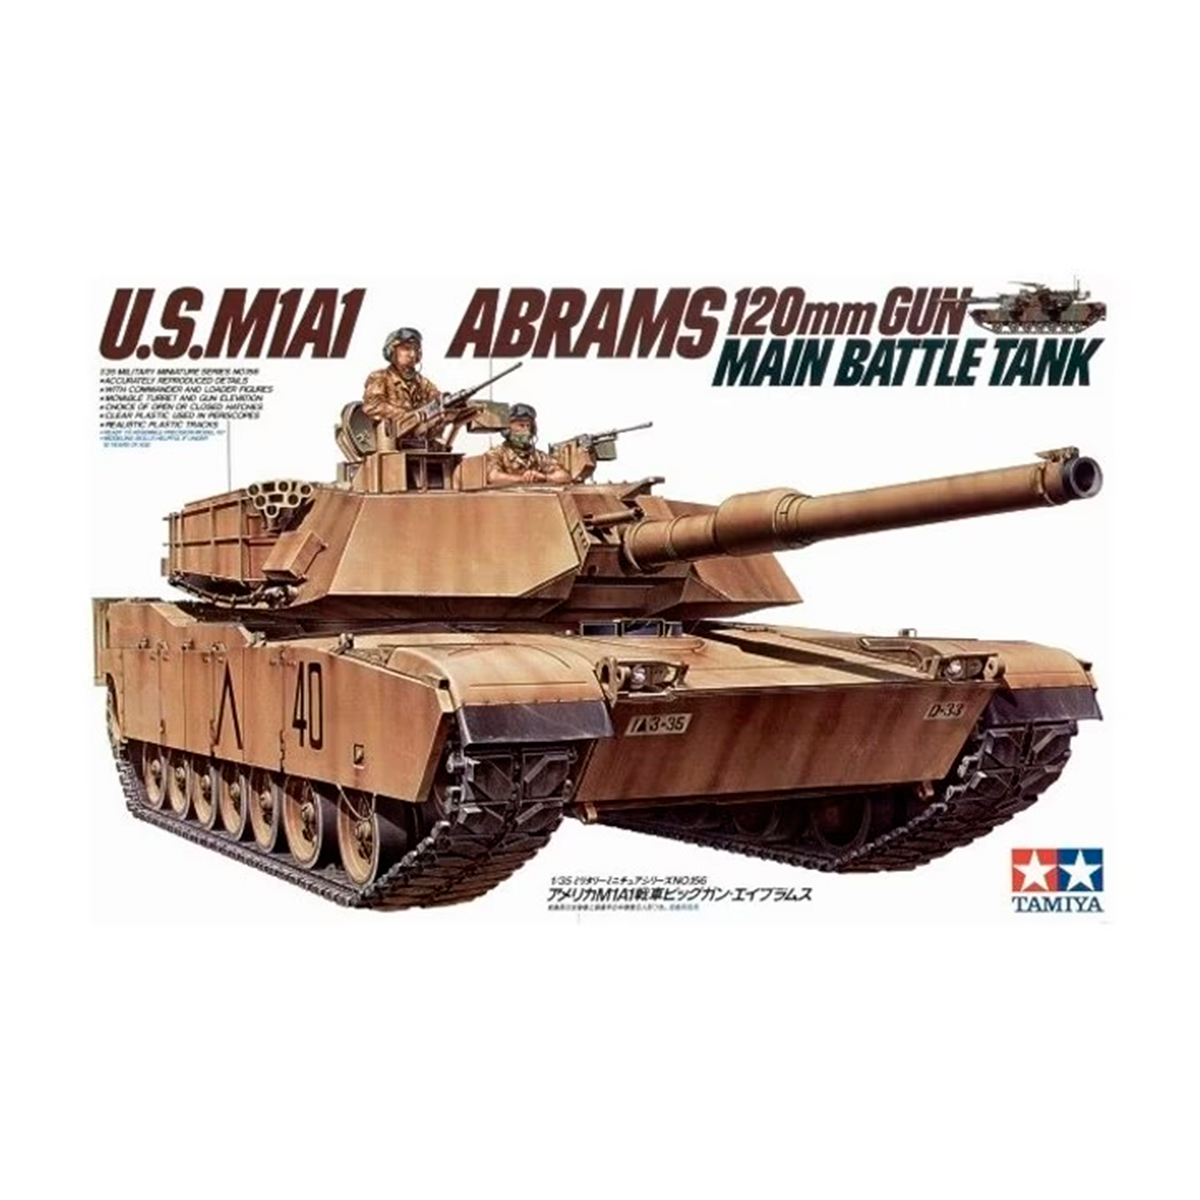 1/35 U.S.M1A1 Abrams